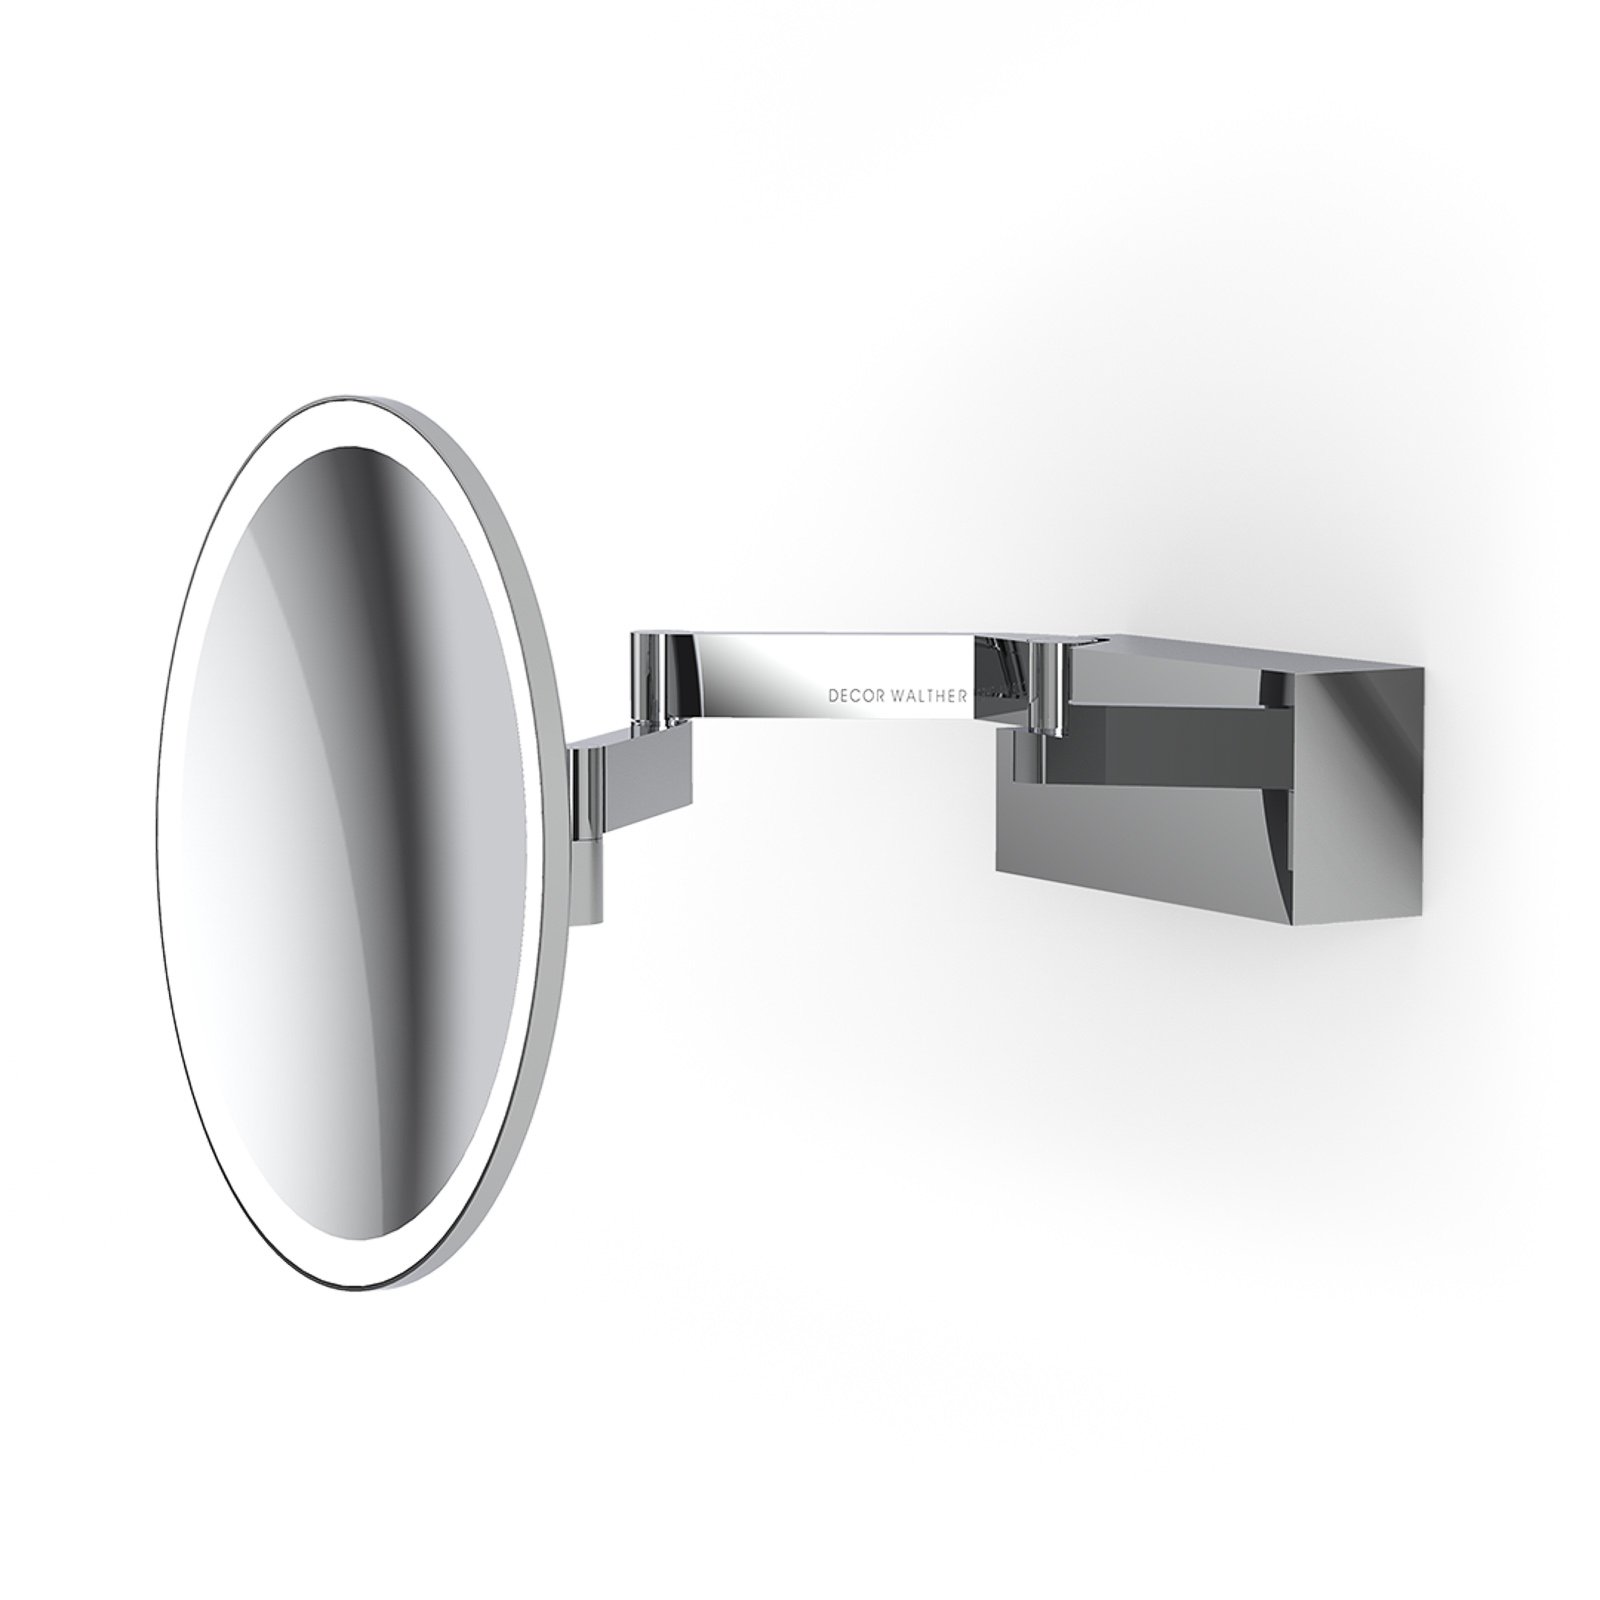 Decor Walther Vision R LED espelho de maquilhagem cromado